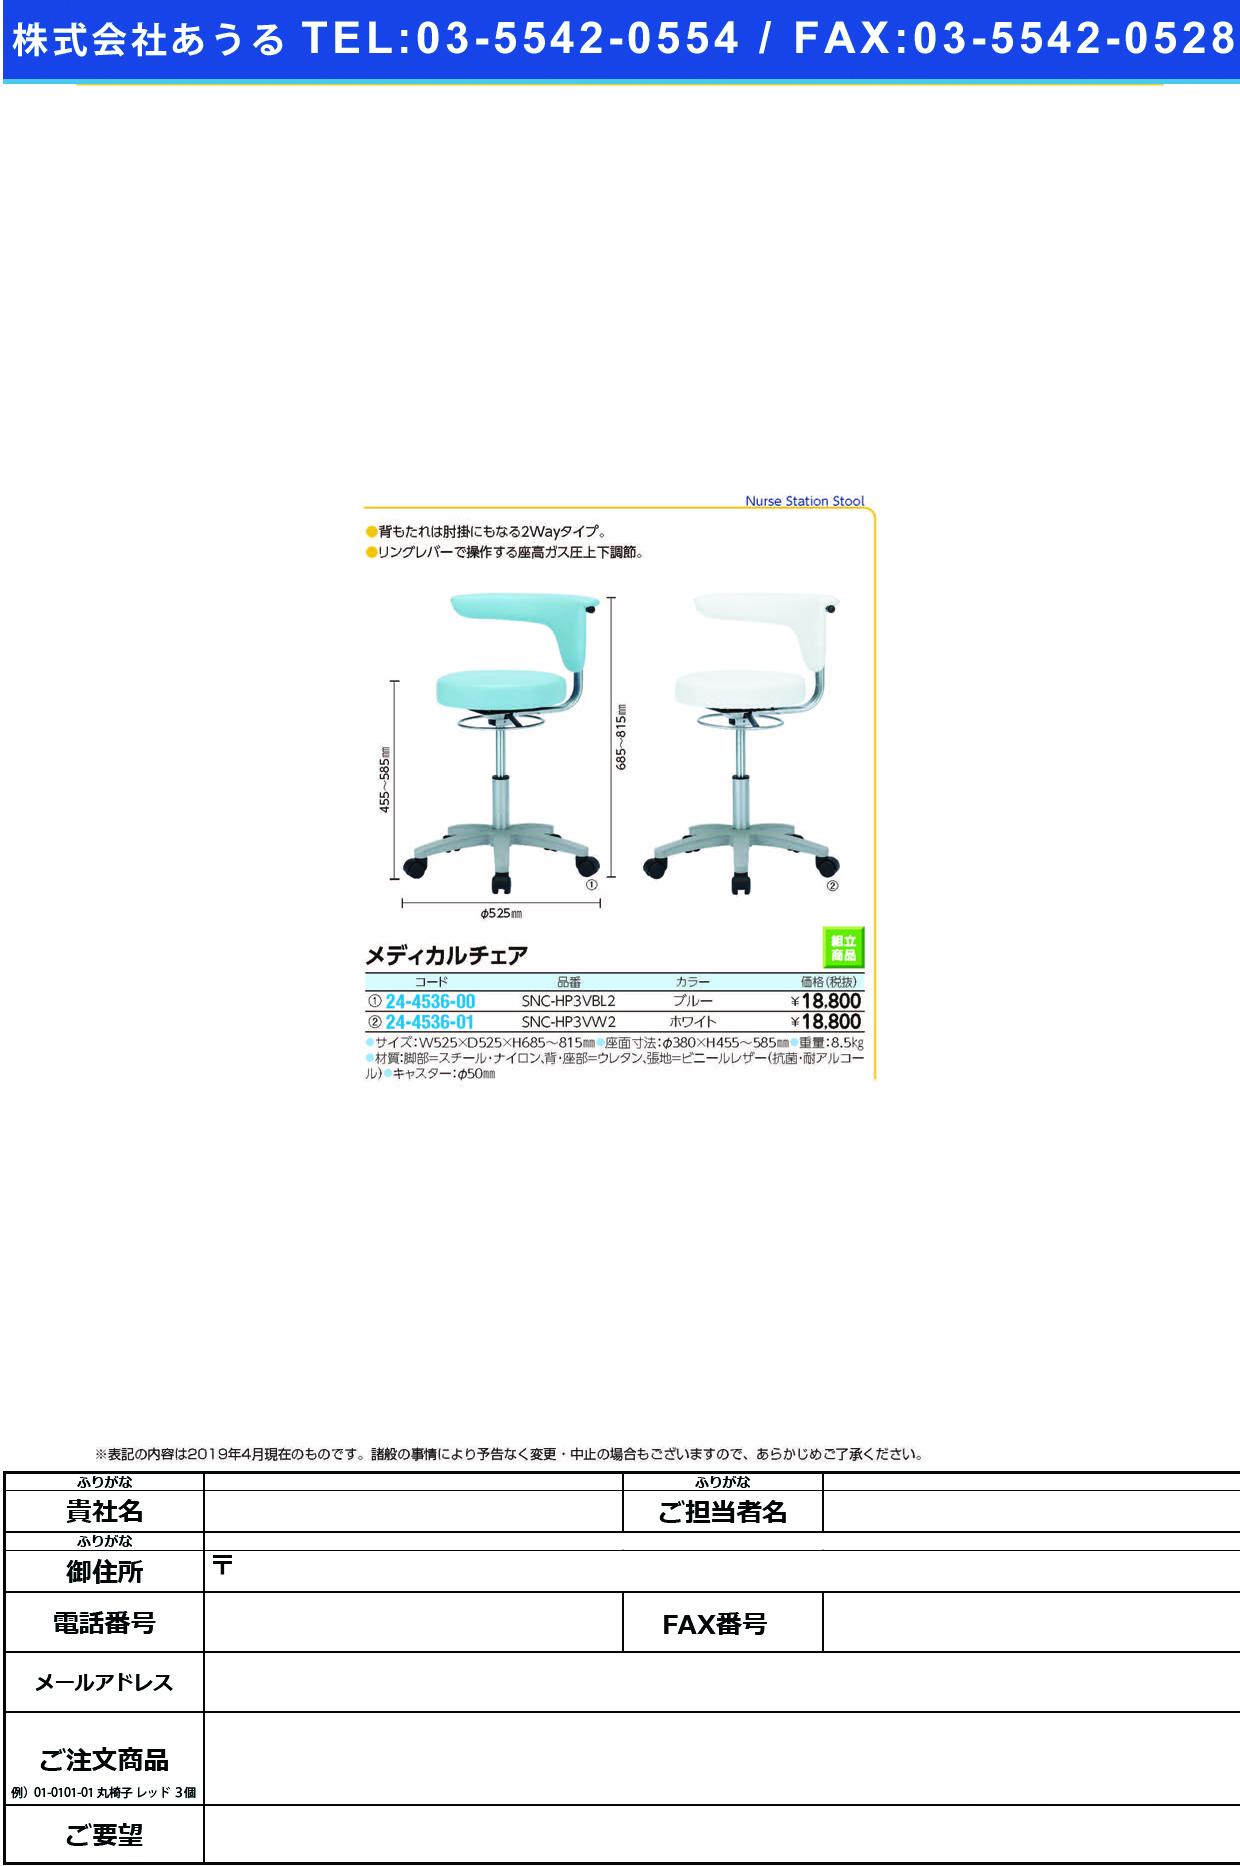 (24-4536-00)メディカルチェア SNC-HP3VBL2(ﾌﾞﾙｰ) ﾒﾃﾞｨｶﾙﾁｪｱ【1台単位】【2019年カタログ商品】